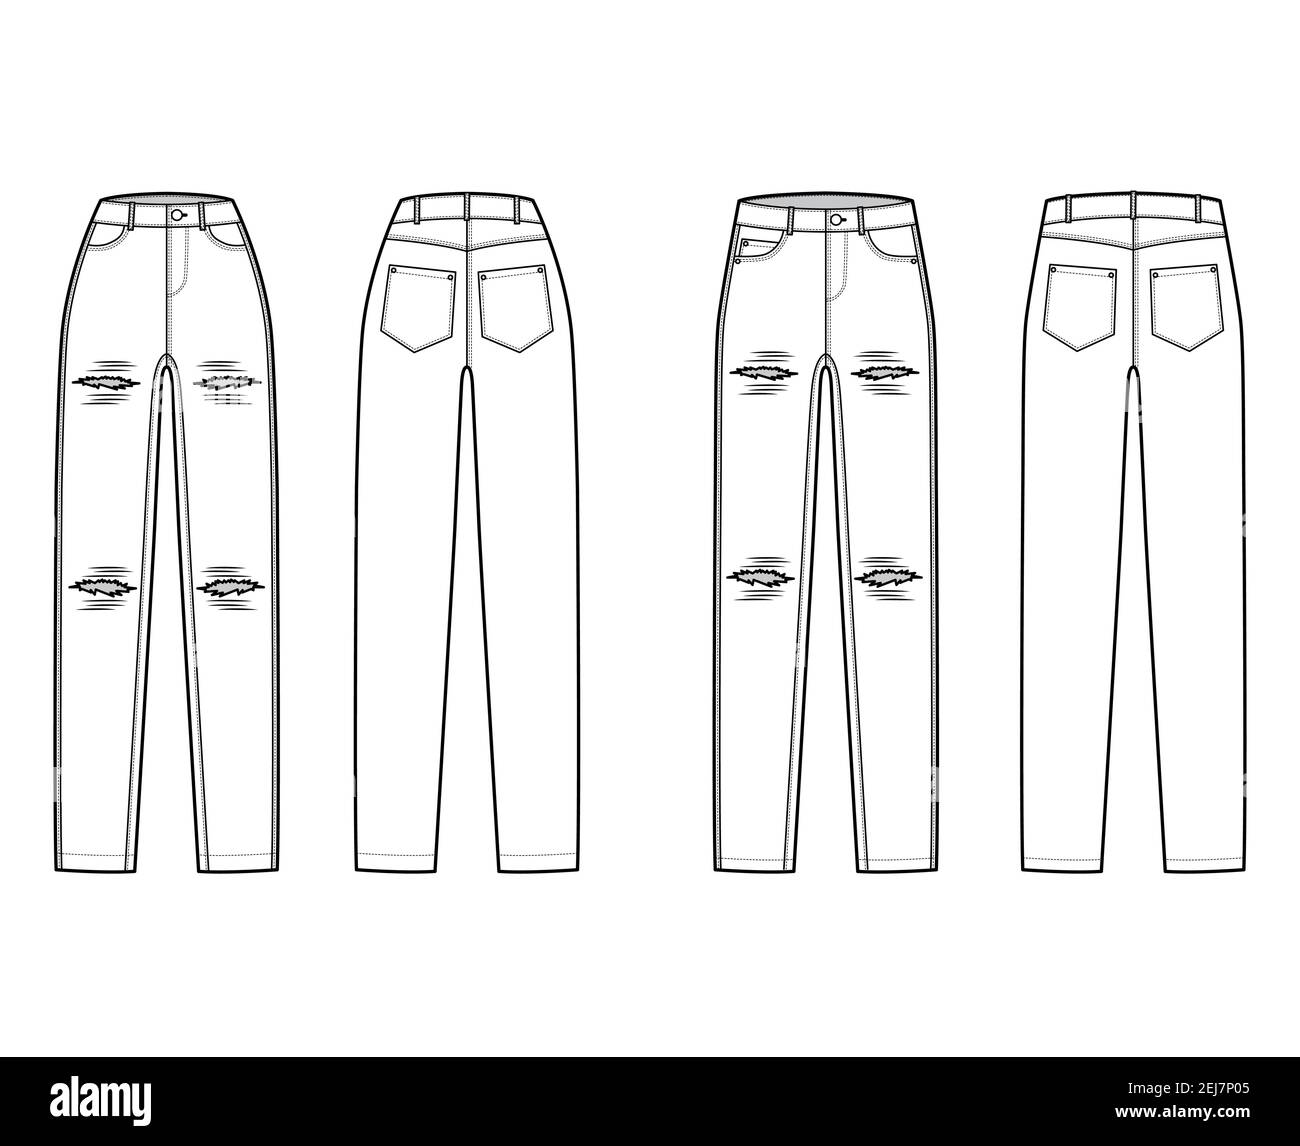 Conjunto de jeans rasgados pantalones vaqueros con detalle ilustración  técnica de moda con longitud completa, cintura normal, talle alto, 5  bolsillos, remaches. Plantilla de fondo plano parte delantera parte trasera  estilo de